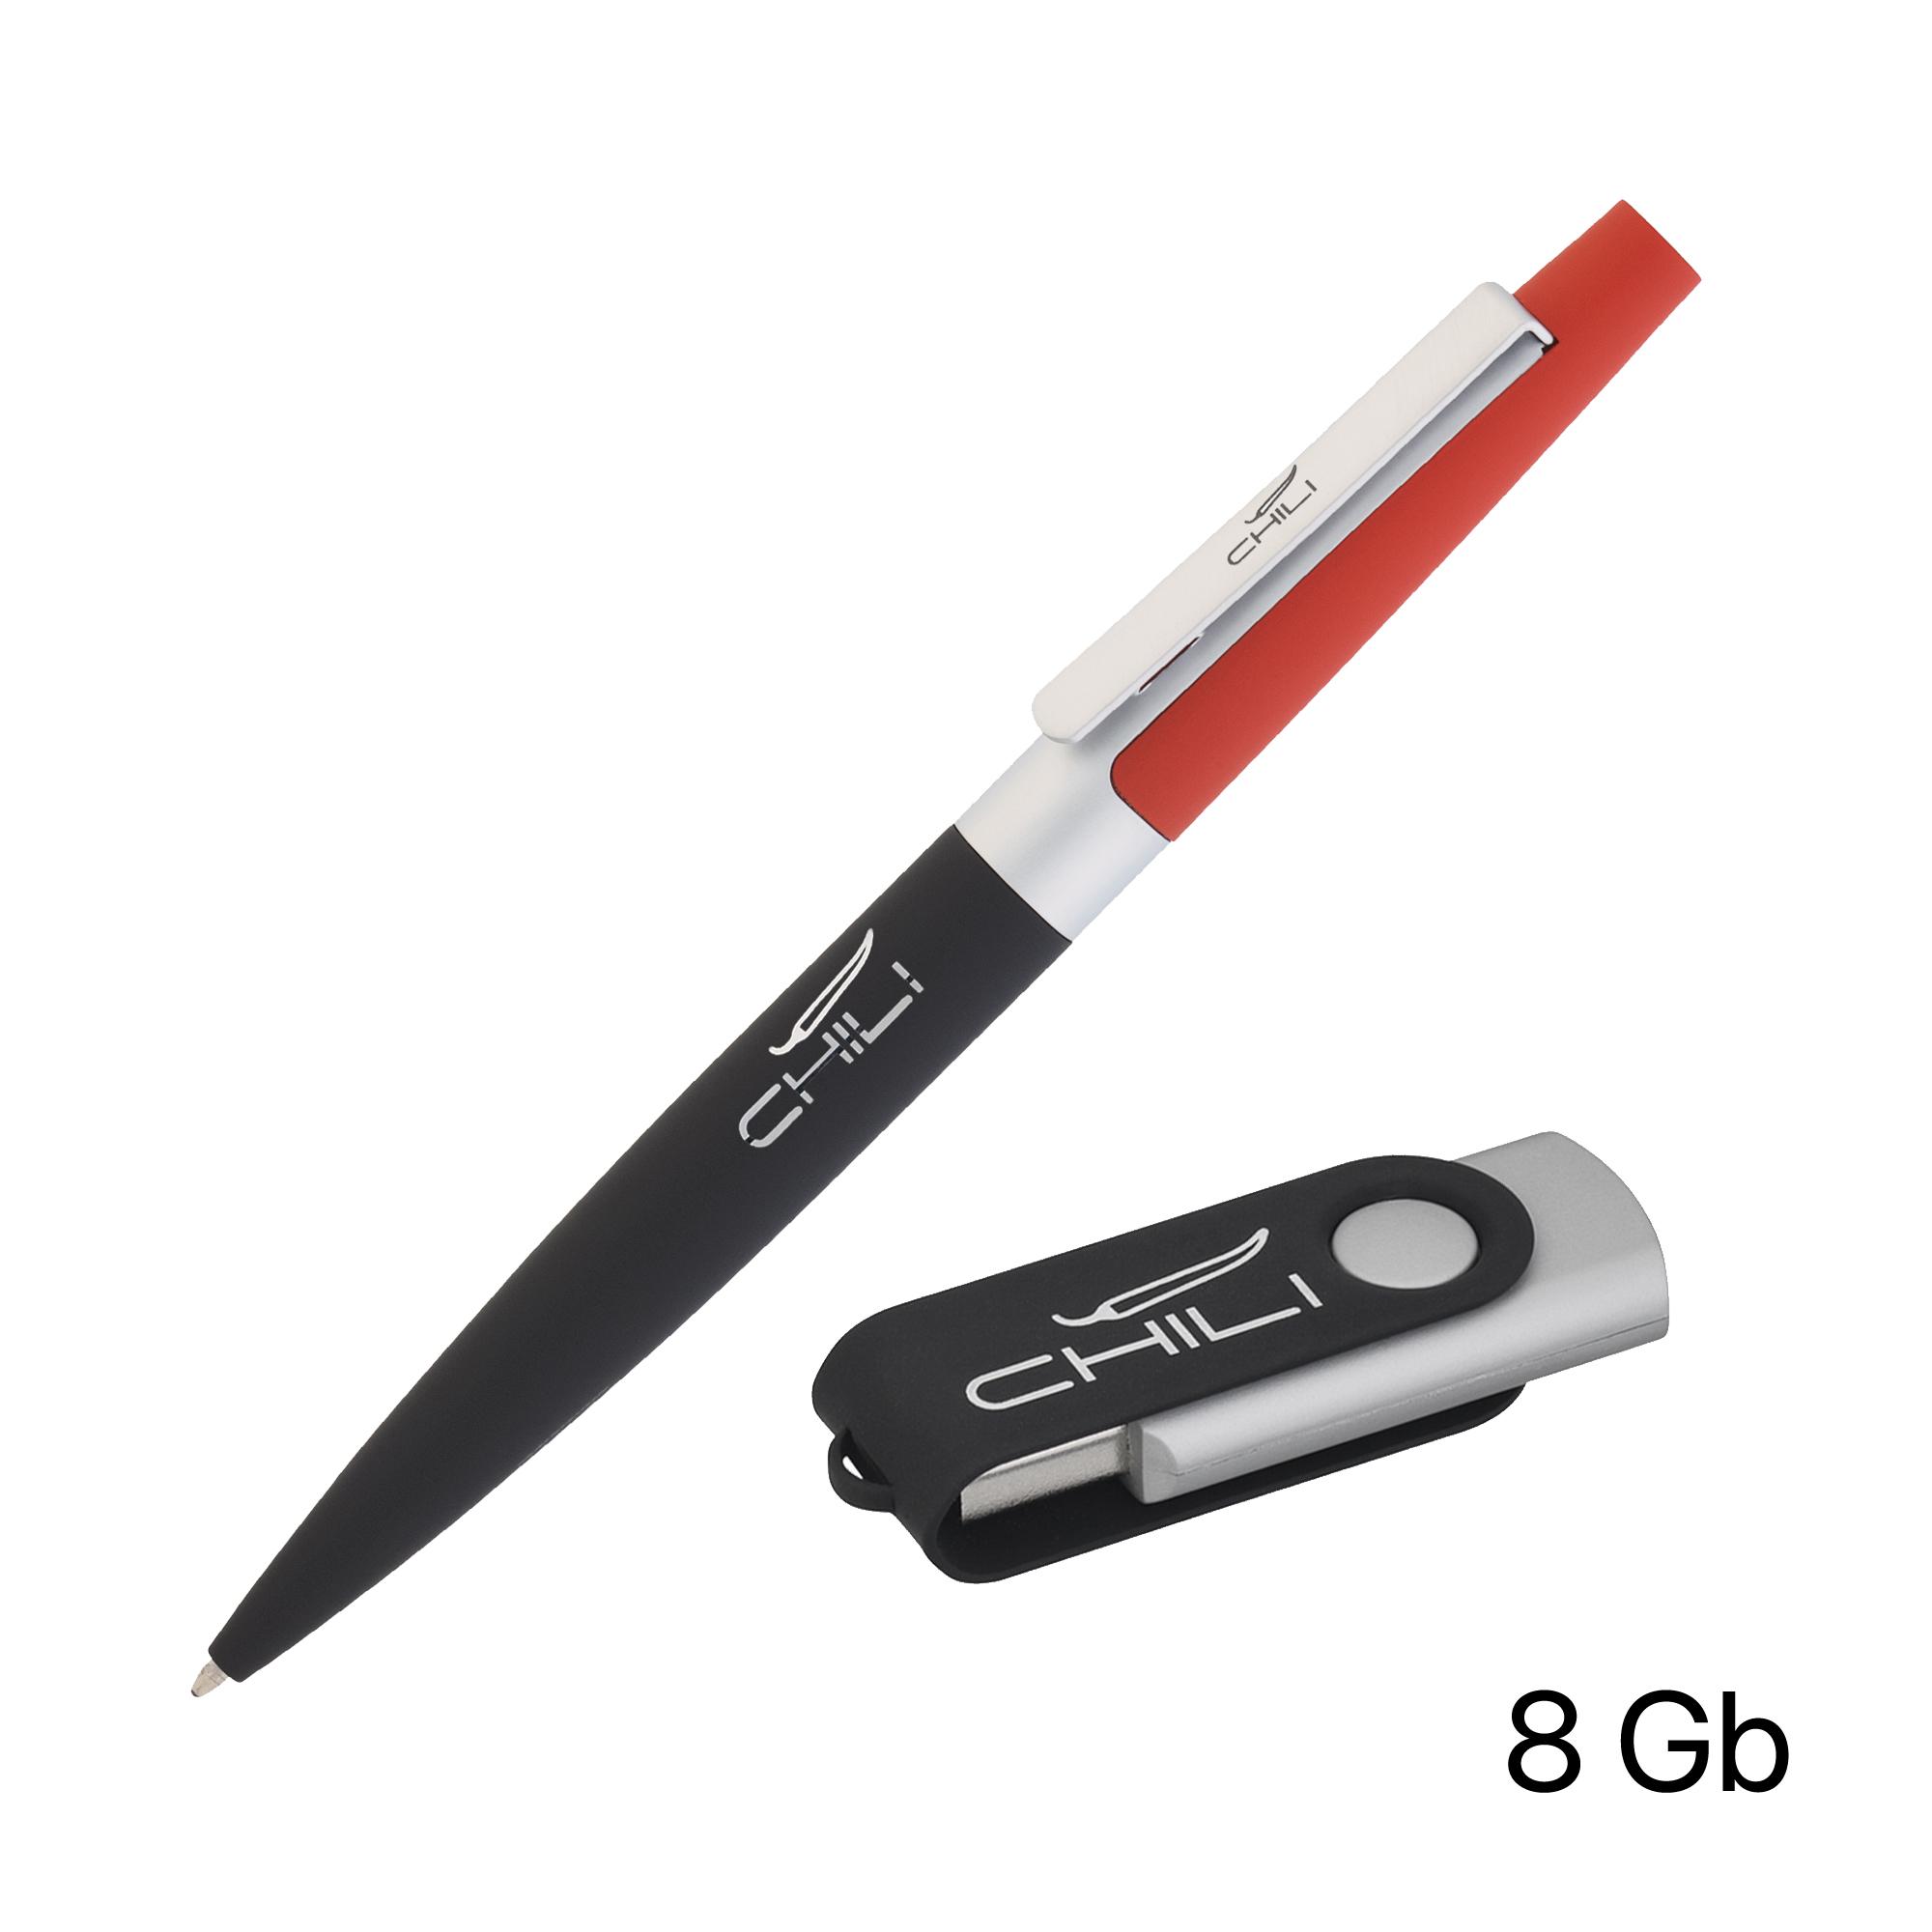 Набор ручка + флеш-карта 8 Гб в футляре, черный/желтый, покрытие soft touch #, цвет черный с красным, фото 1